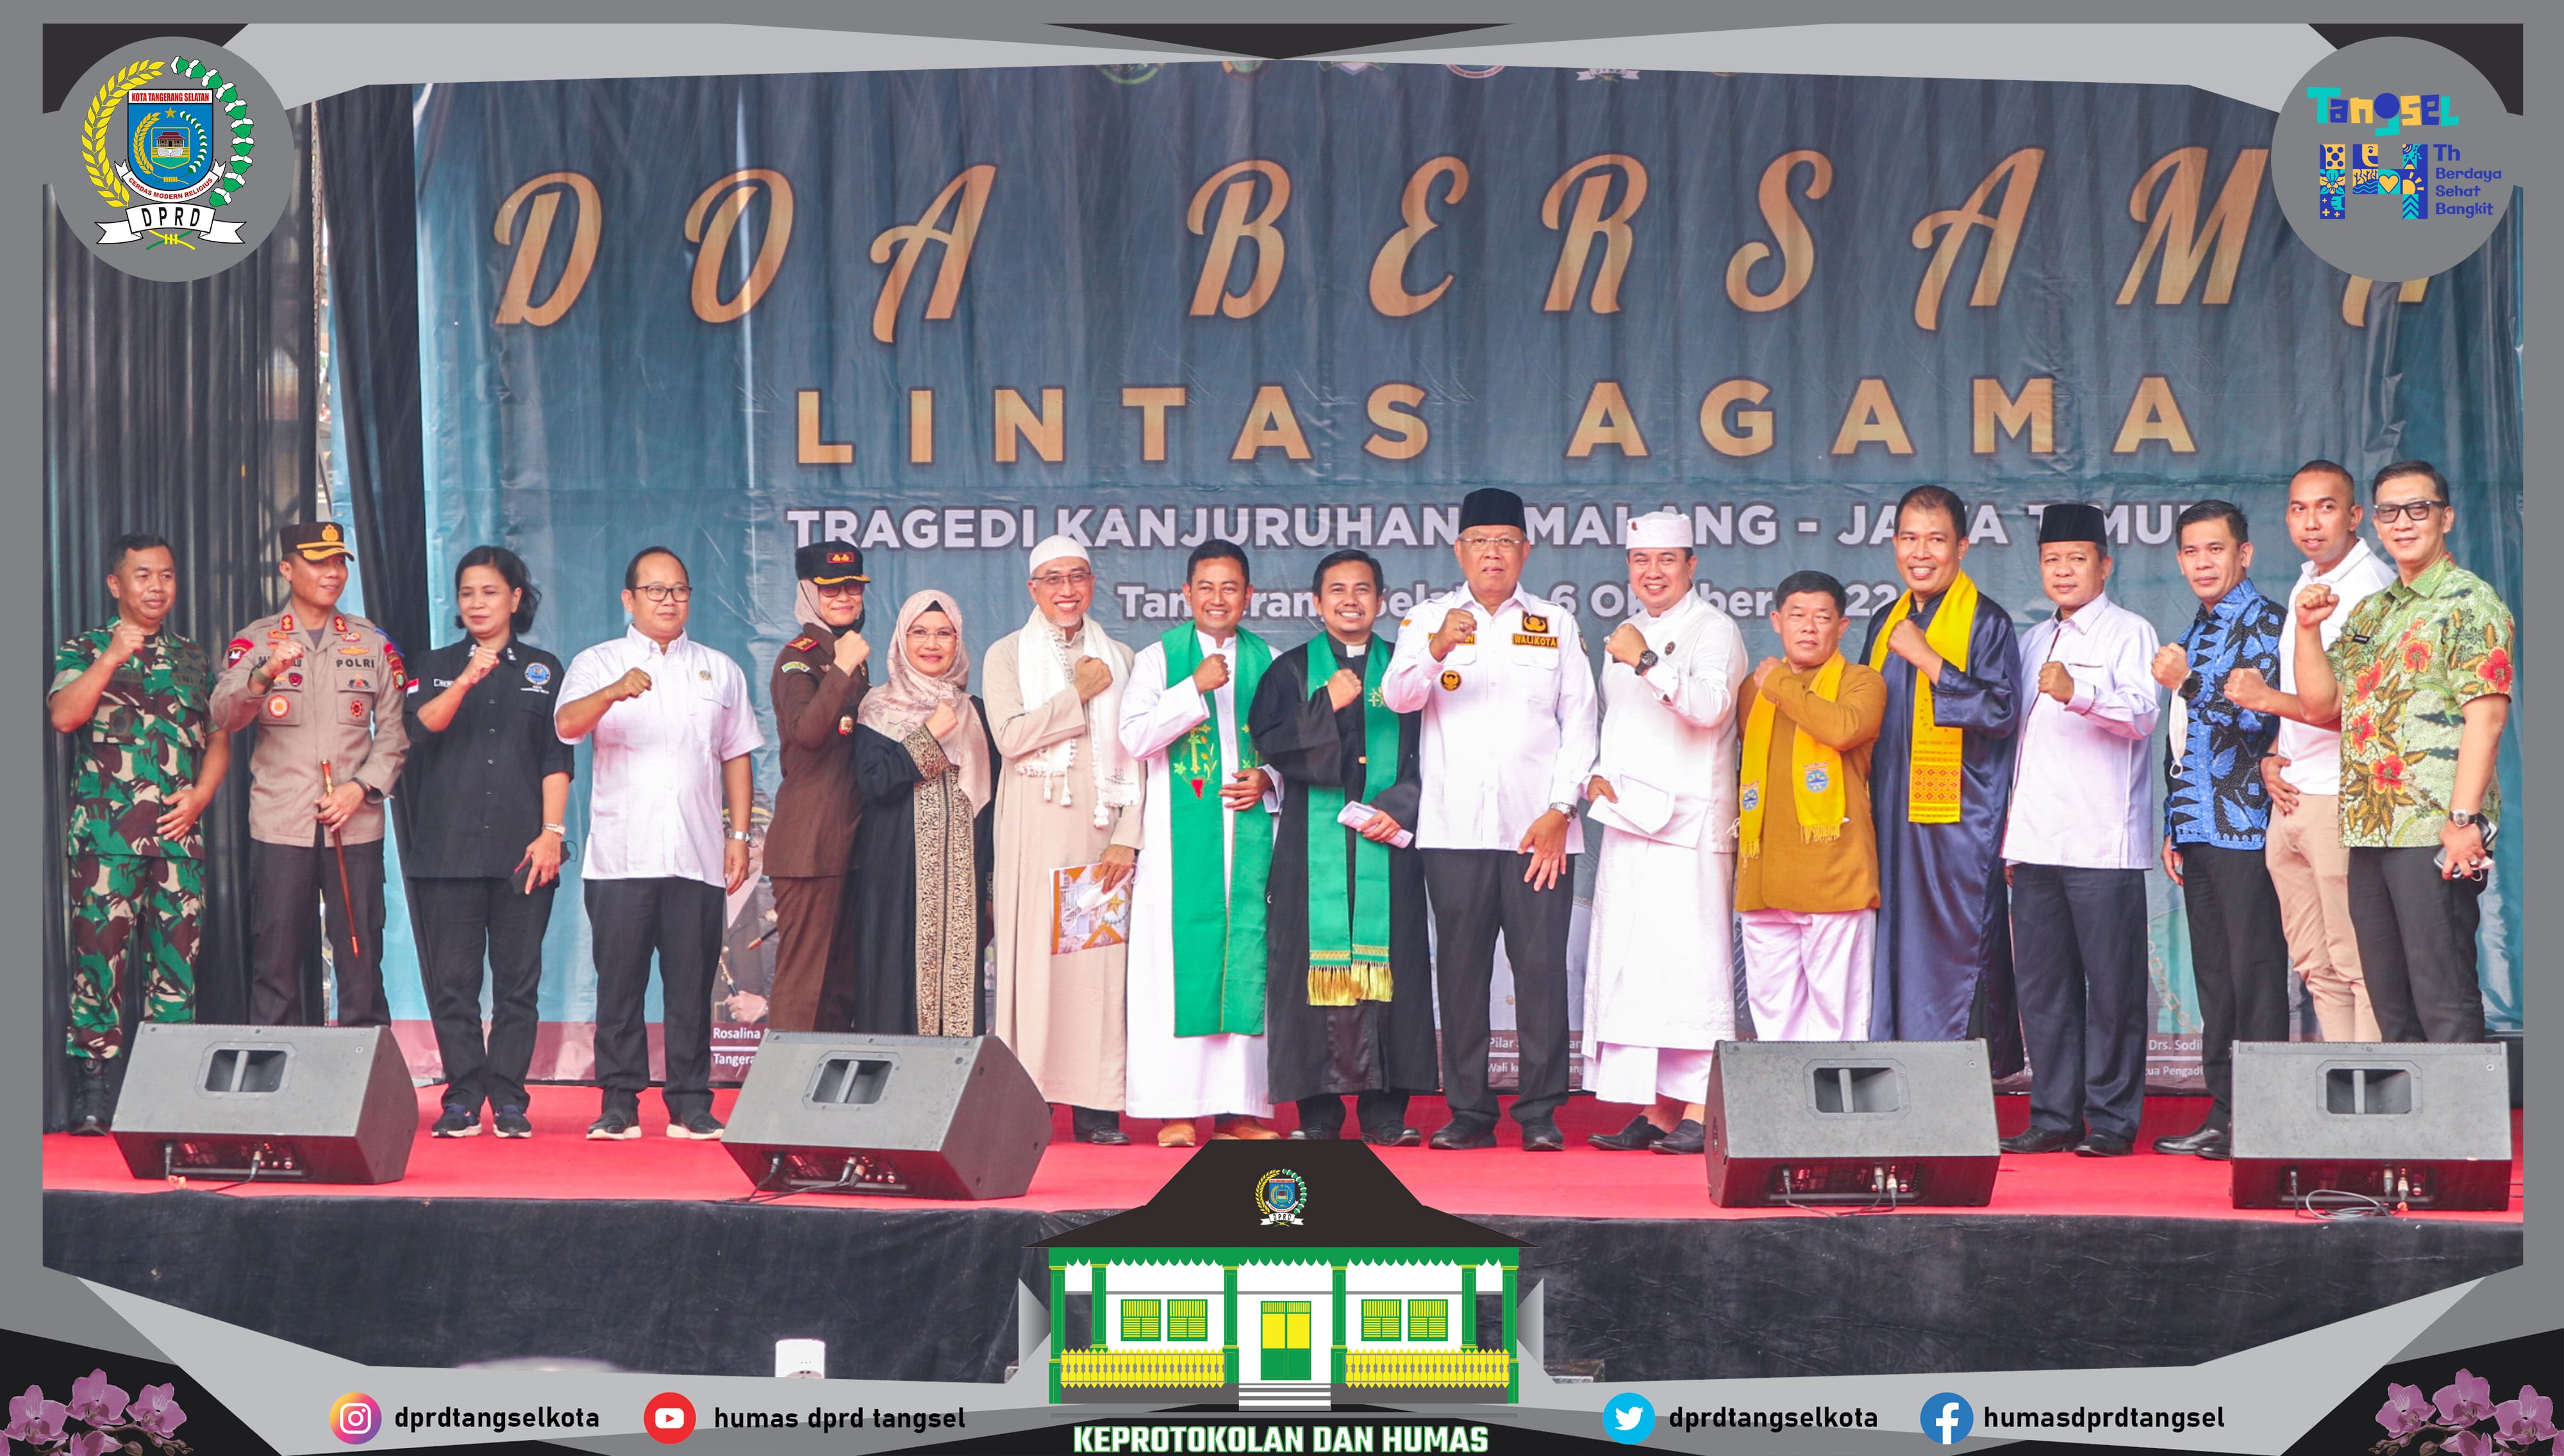 Doa Bersama Lintas Agama untuk Korban Tragedi di Kanjuruhan Malang